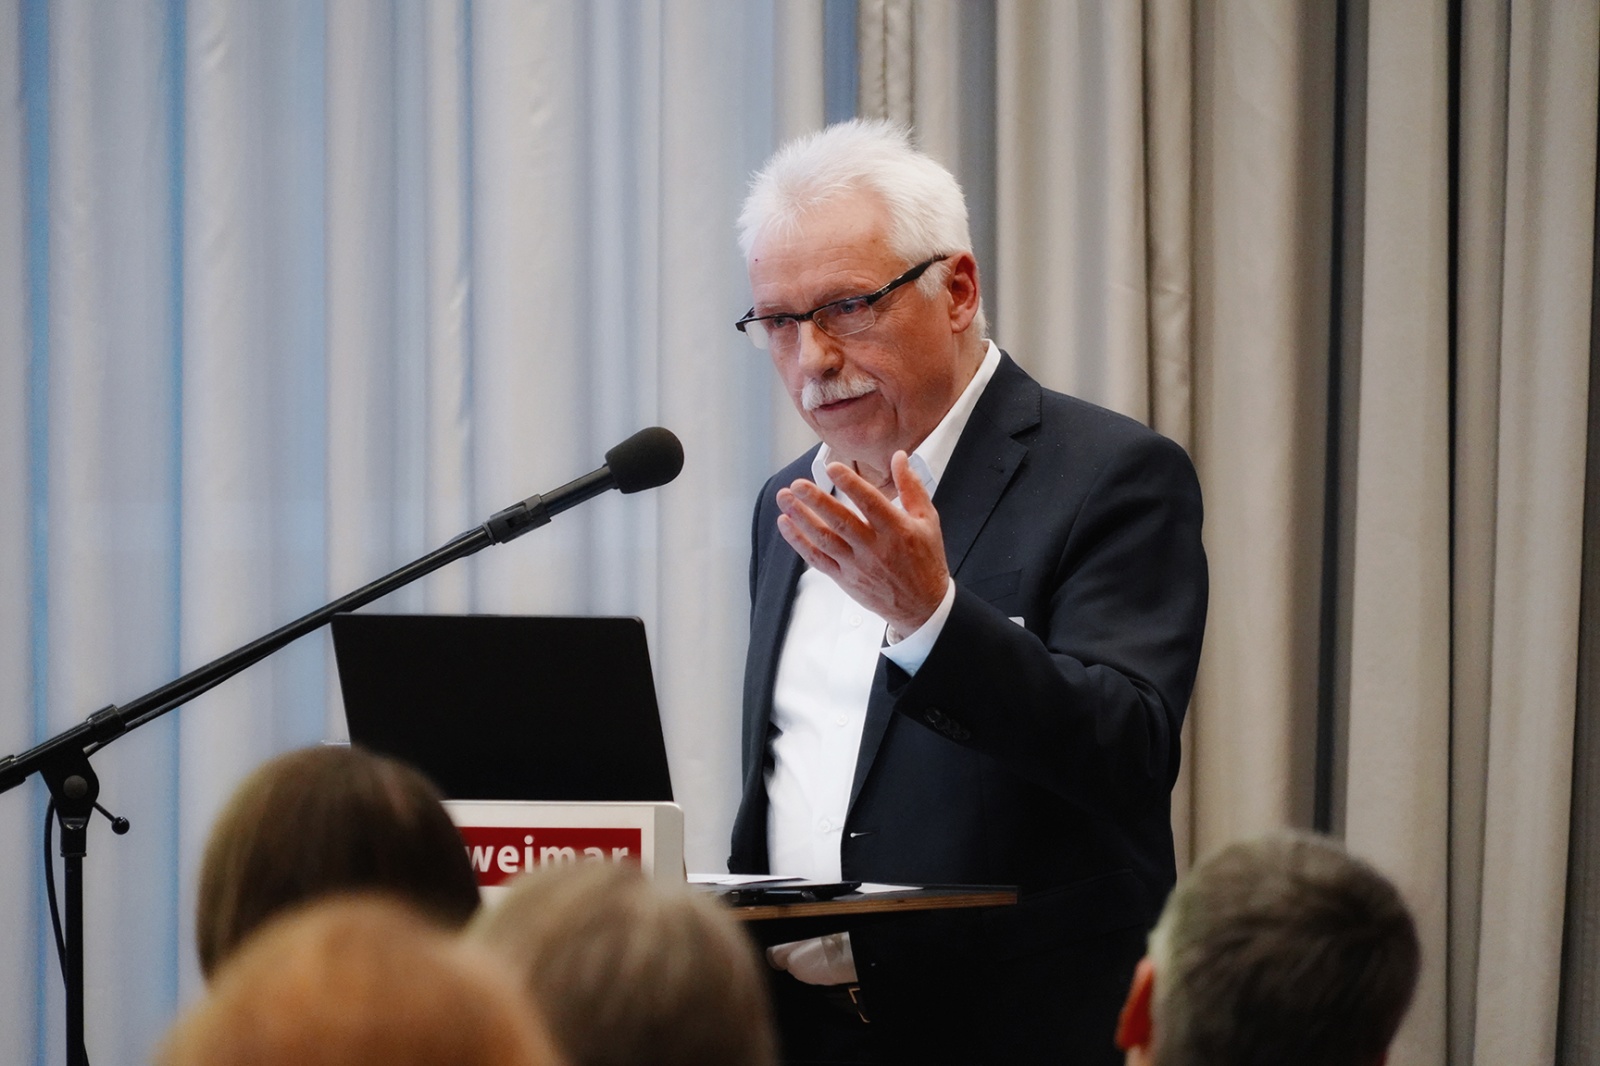 Wohnbaukonferenz »Neues Wohnen denken« | SESSION 3: Prof. Dr. Gerd Zimmermann, Figure: Katja Gehlfuß